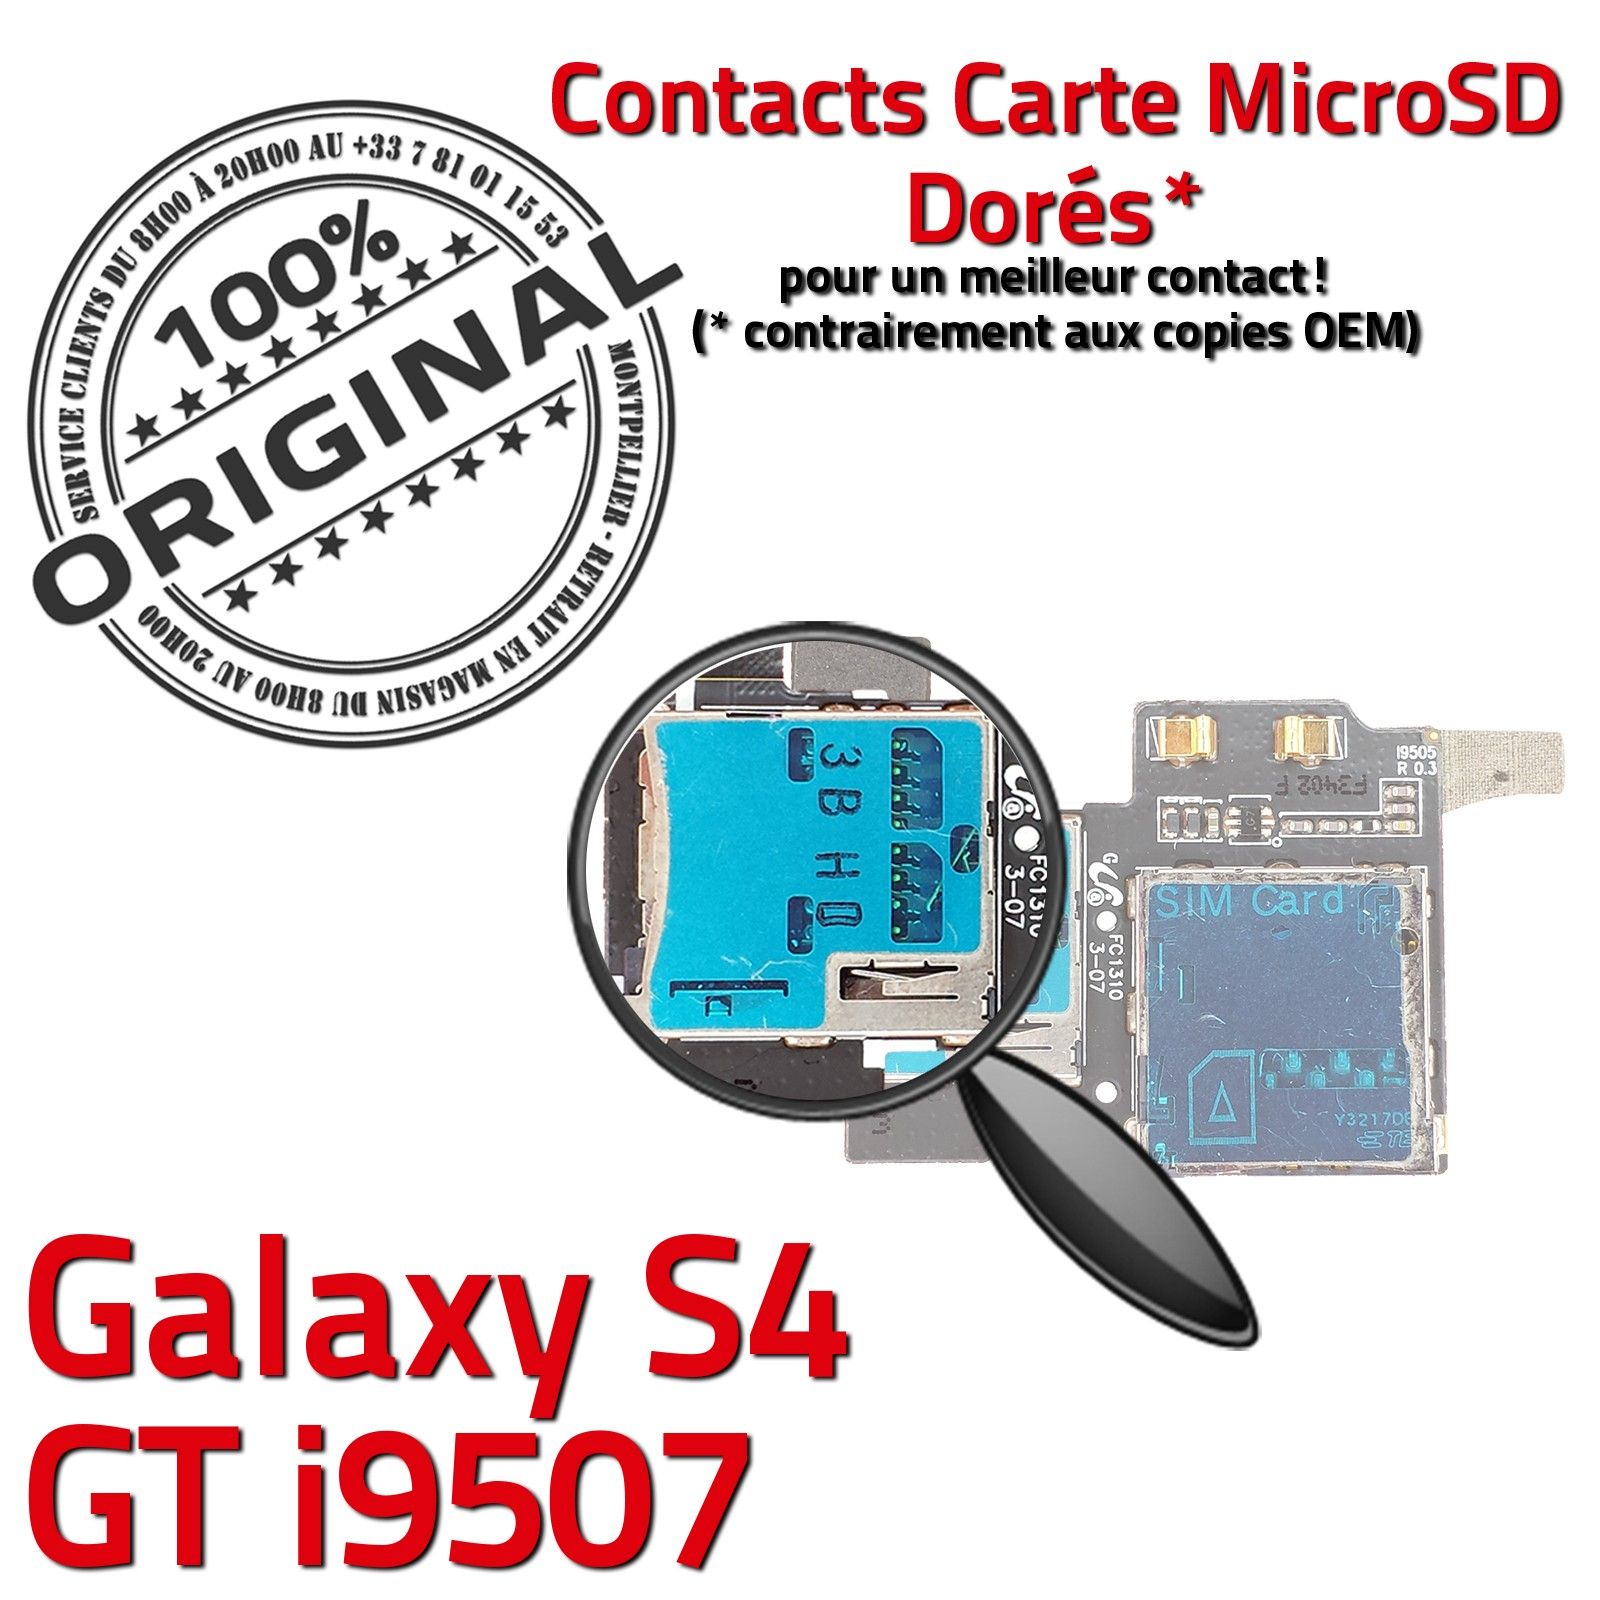 ORIGINAL Samsung Galaxy S4 GT i9507 Lecteur Carte Memoire SIM Micro-SD Connecteur Contacts Dorés Reader Connector Nappe Qualité